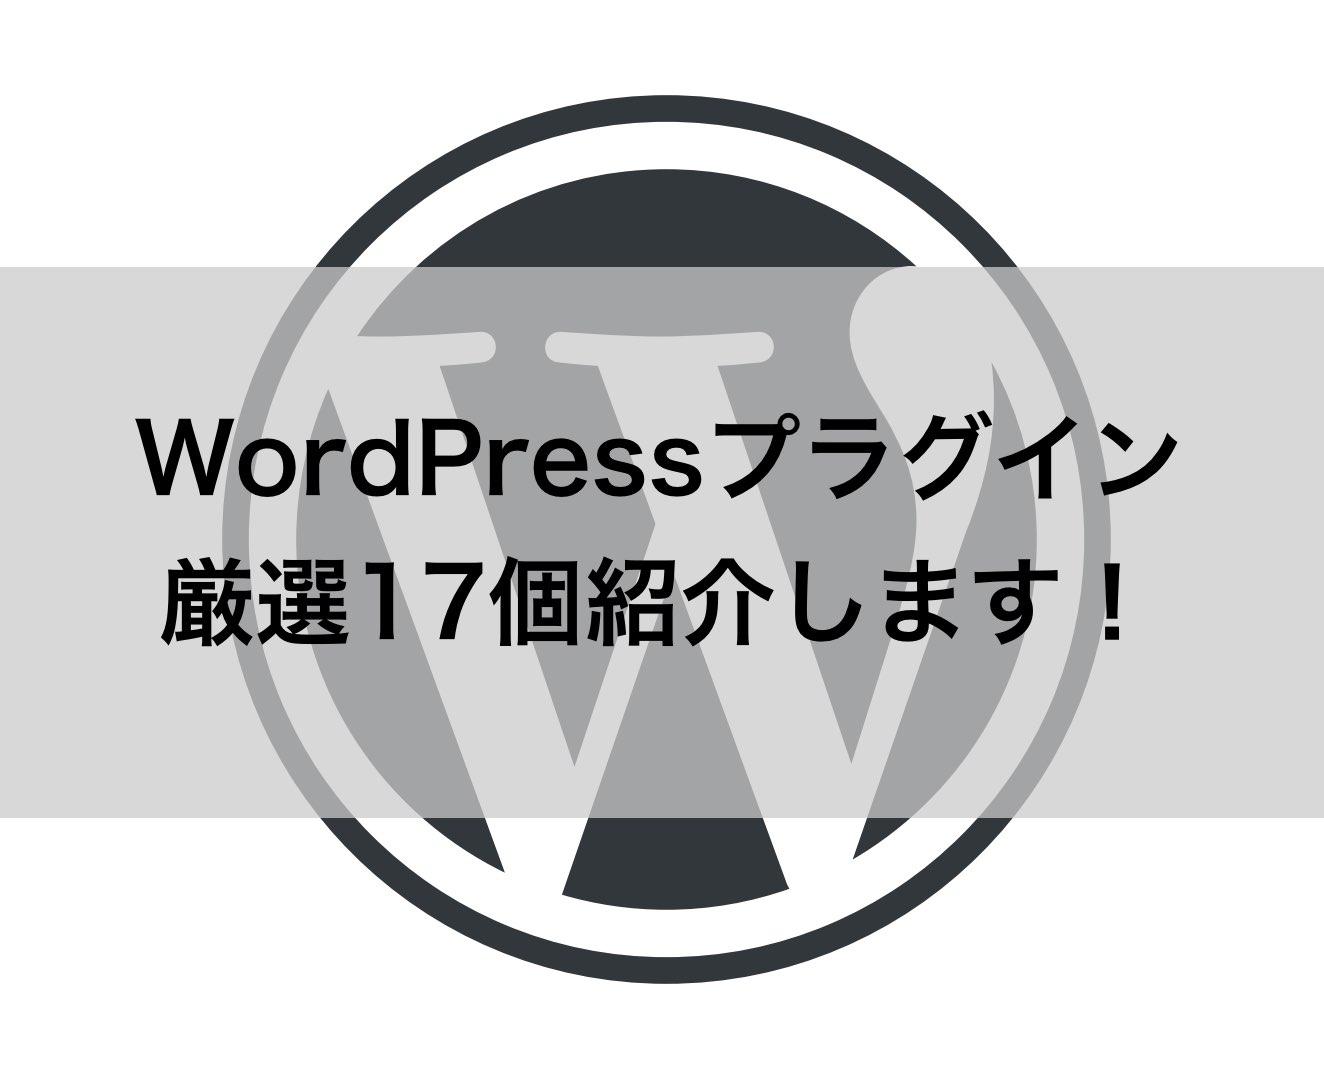 WordPress（ワードプレス）プラグイン厳選17個紹介します！